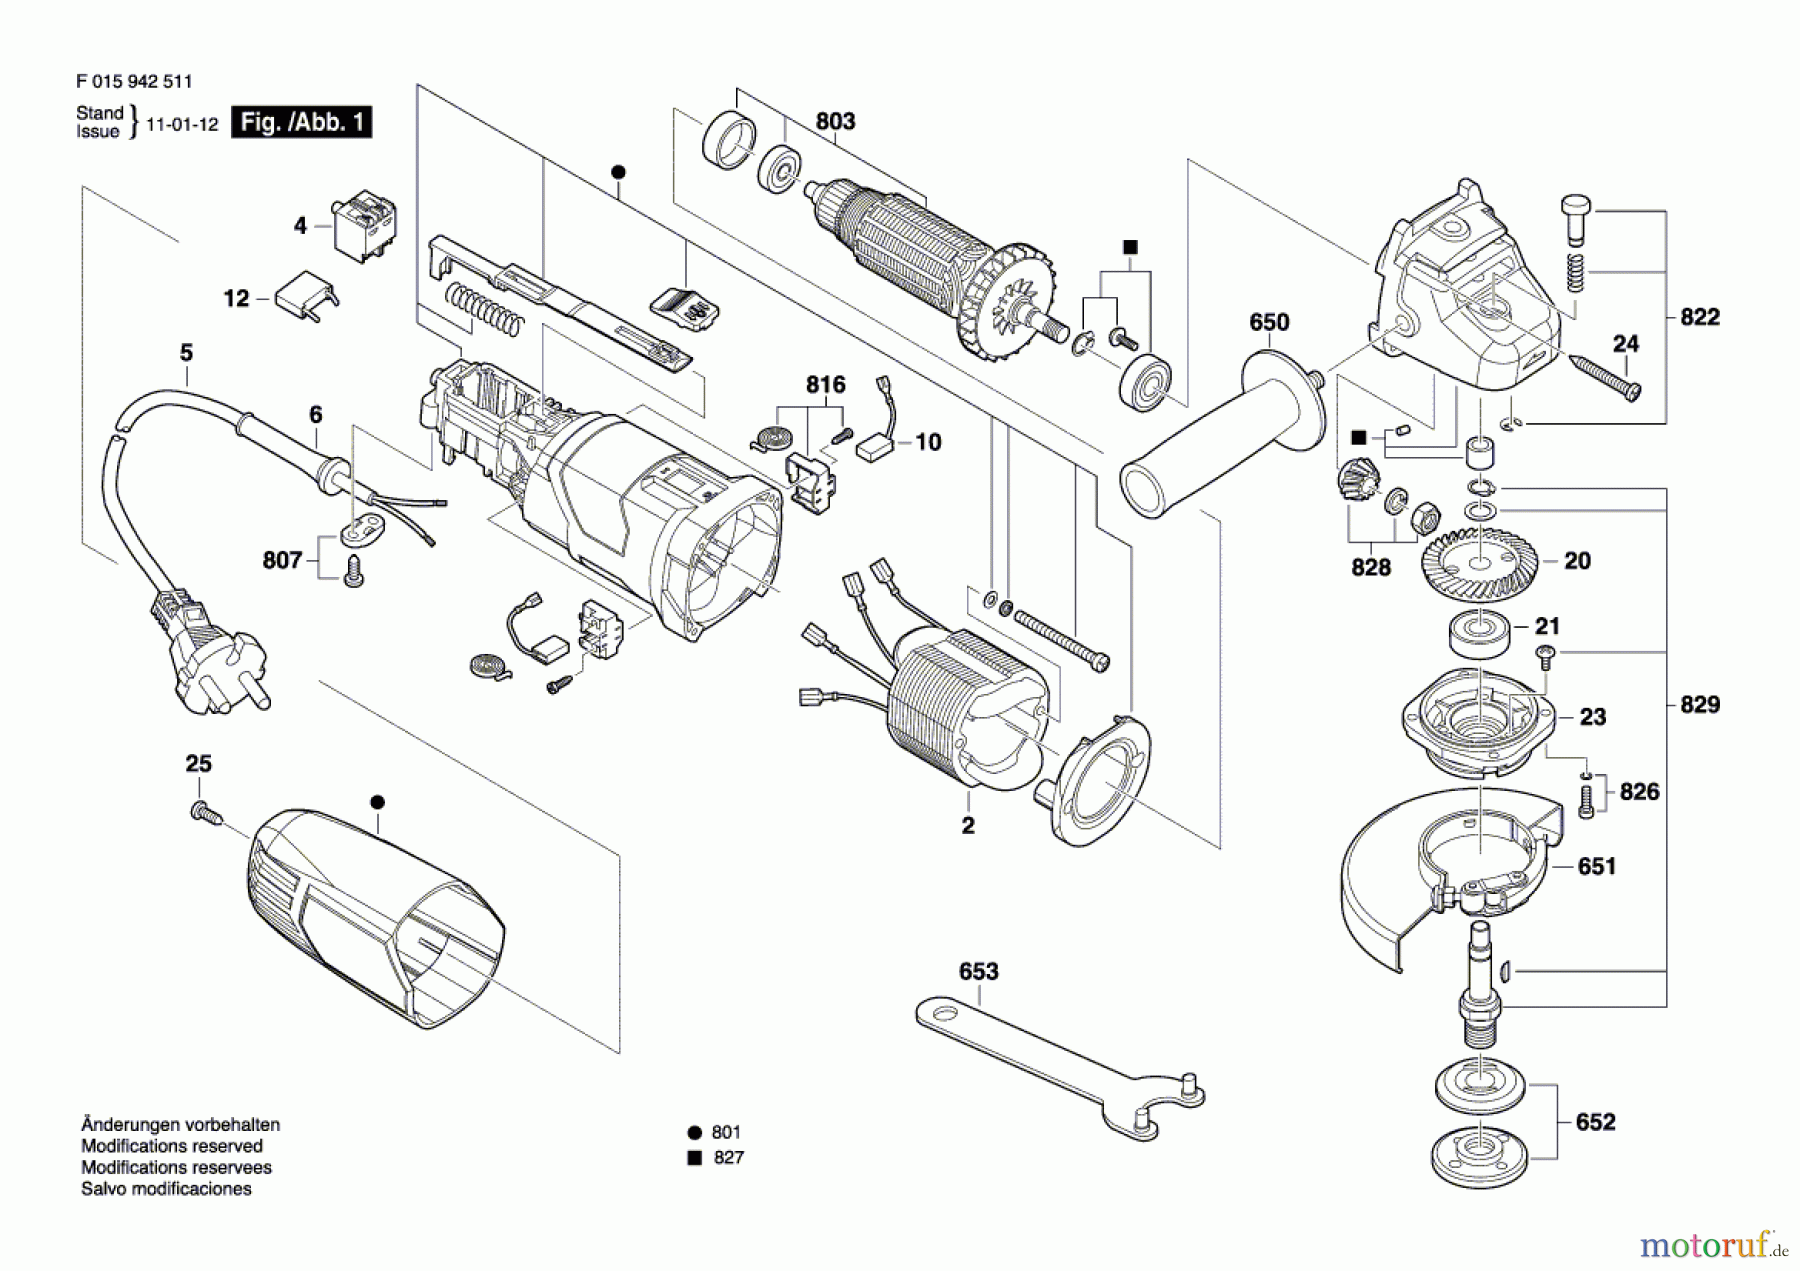  Bosch Werkzeug Winkelschleifer 9425 Seite 1